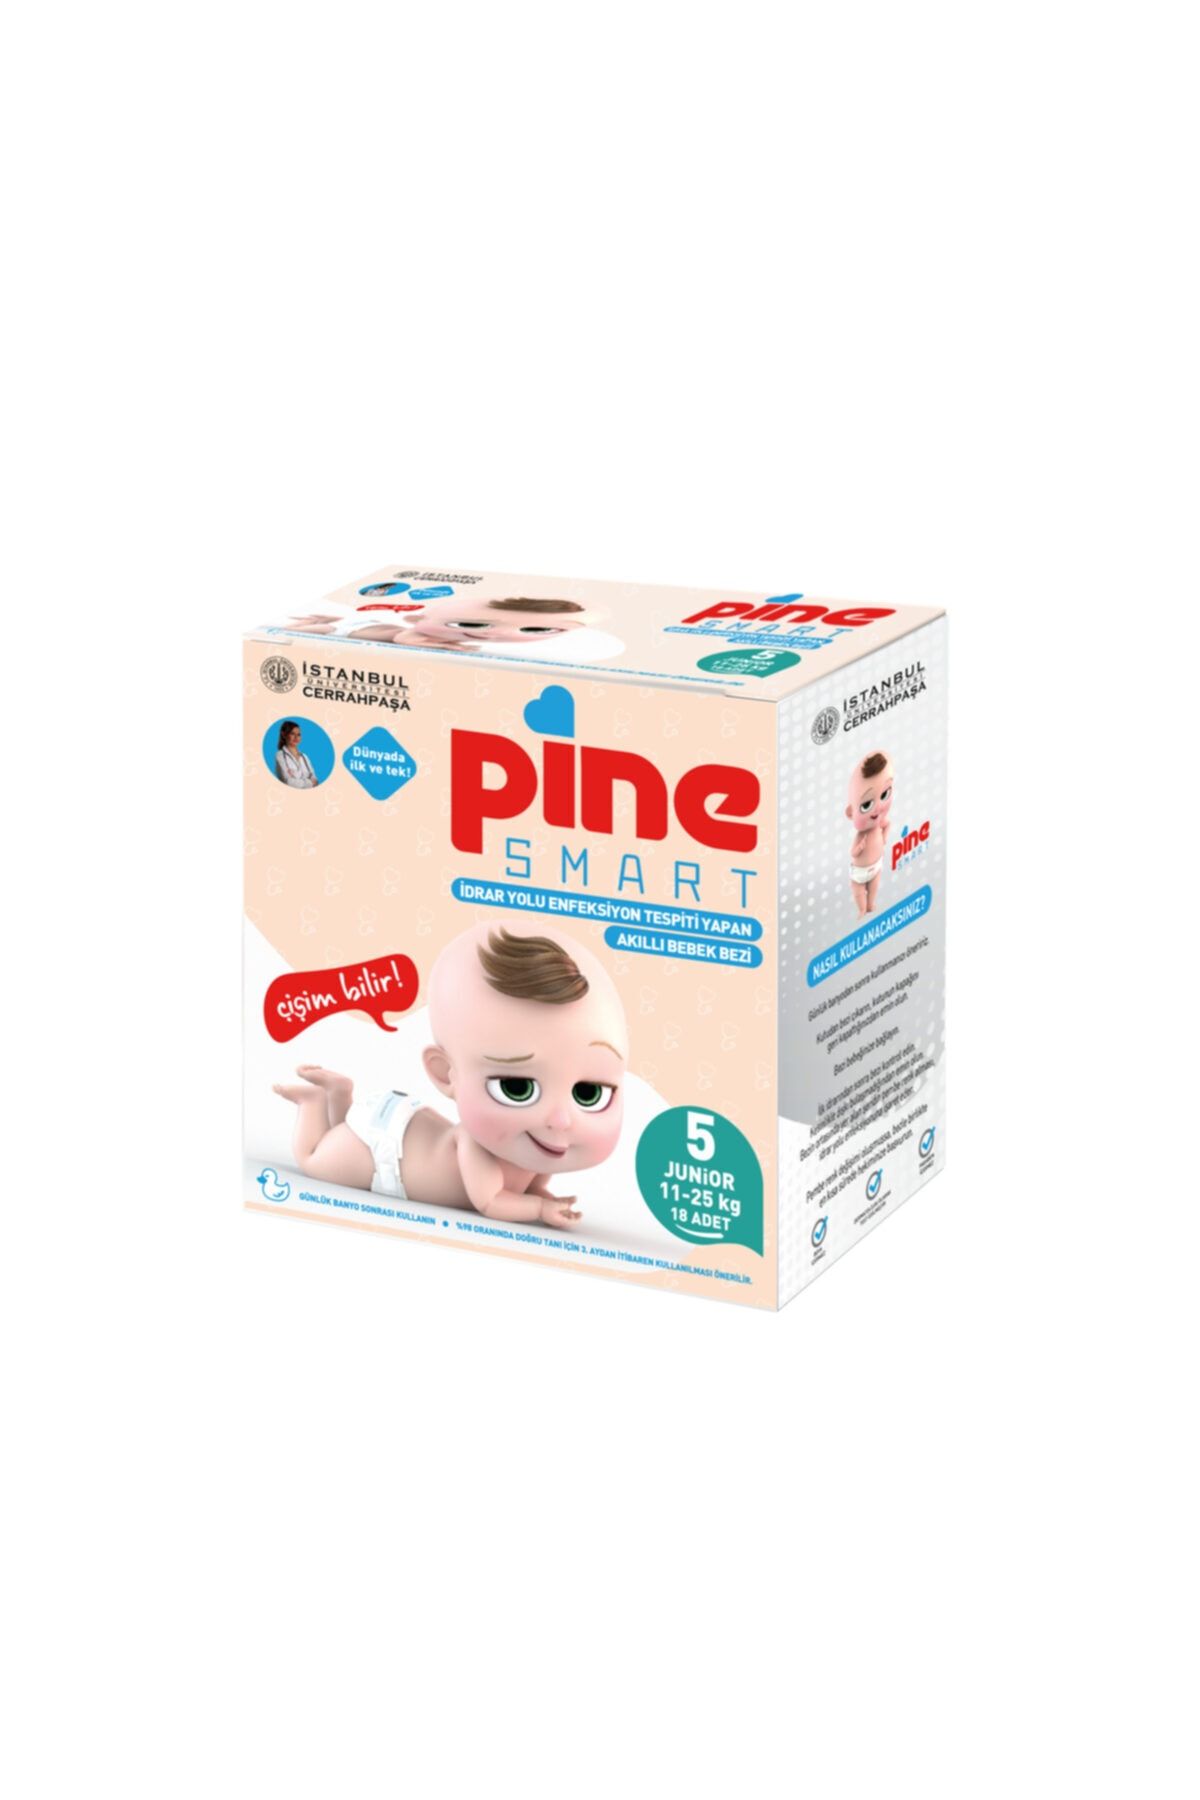 Pine Smart Akıllı Bebek Bezi 5 Junior 11-25 Kg 18 Adet